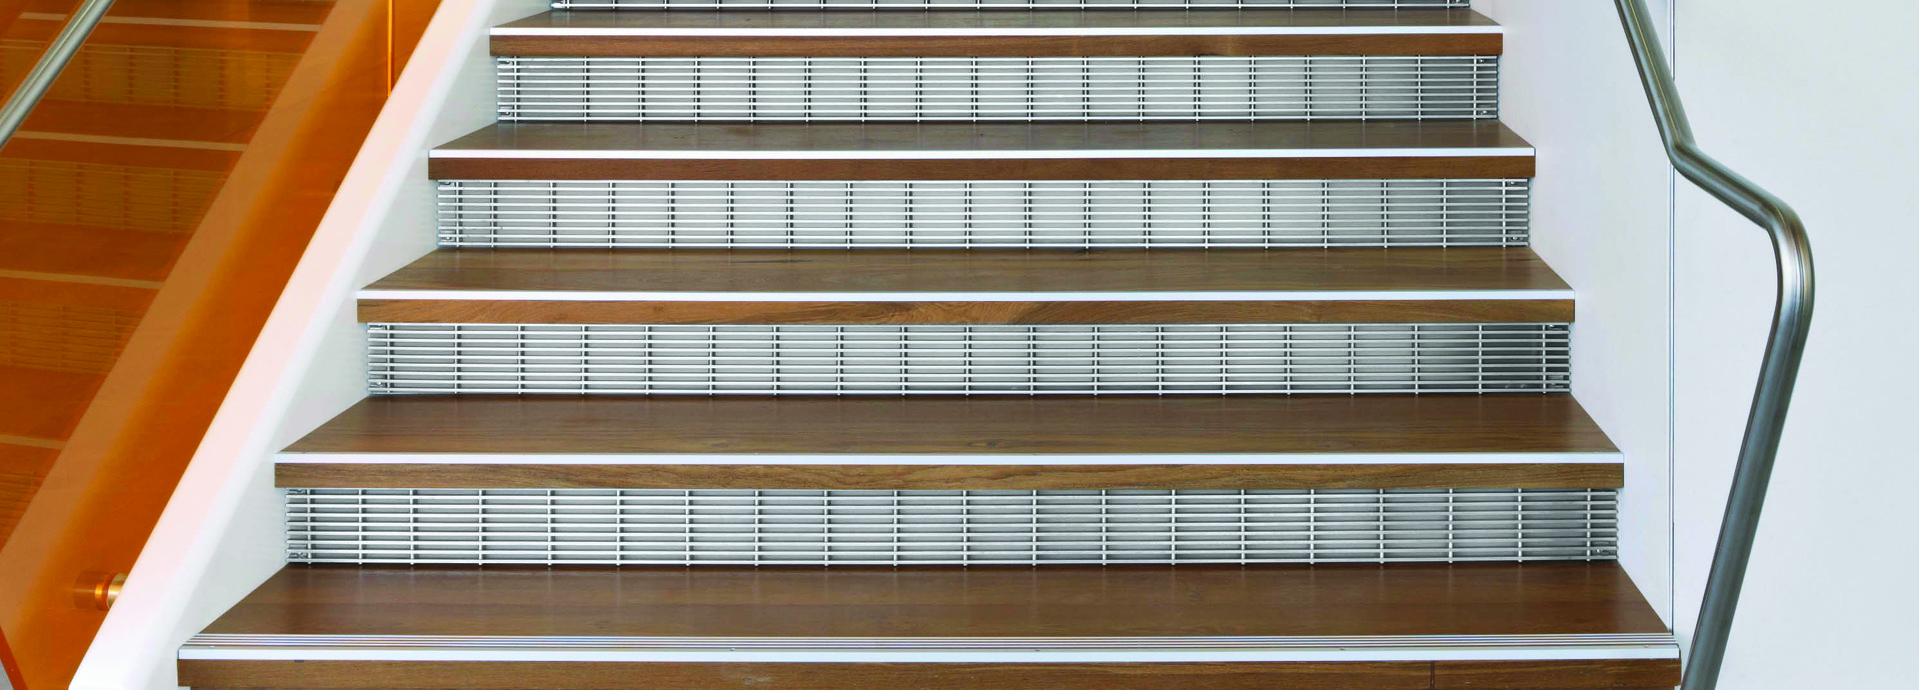 Metal Stair Risers 2_jpeg.jpg